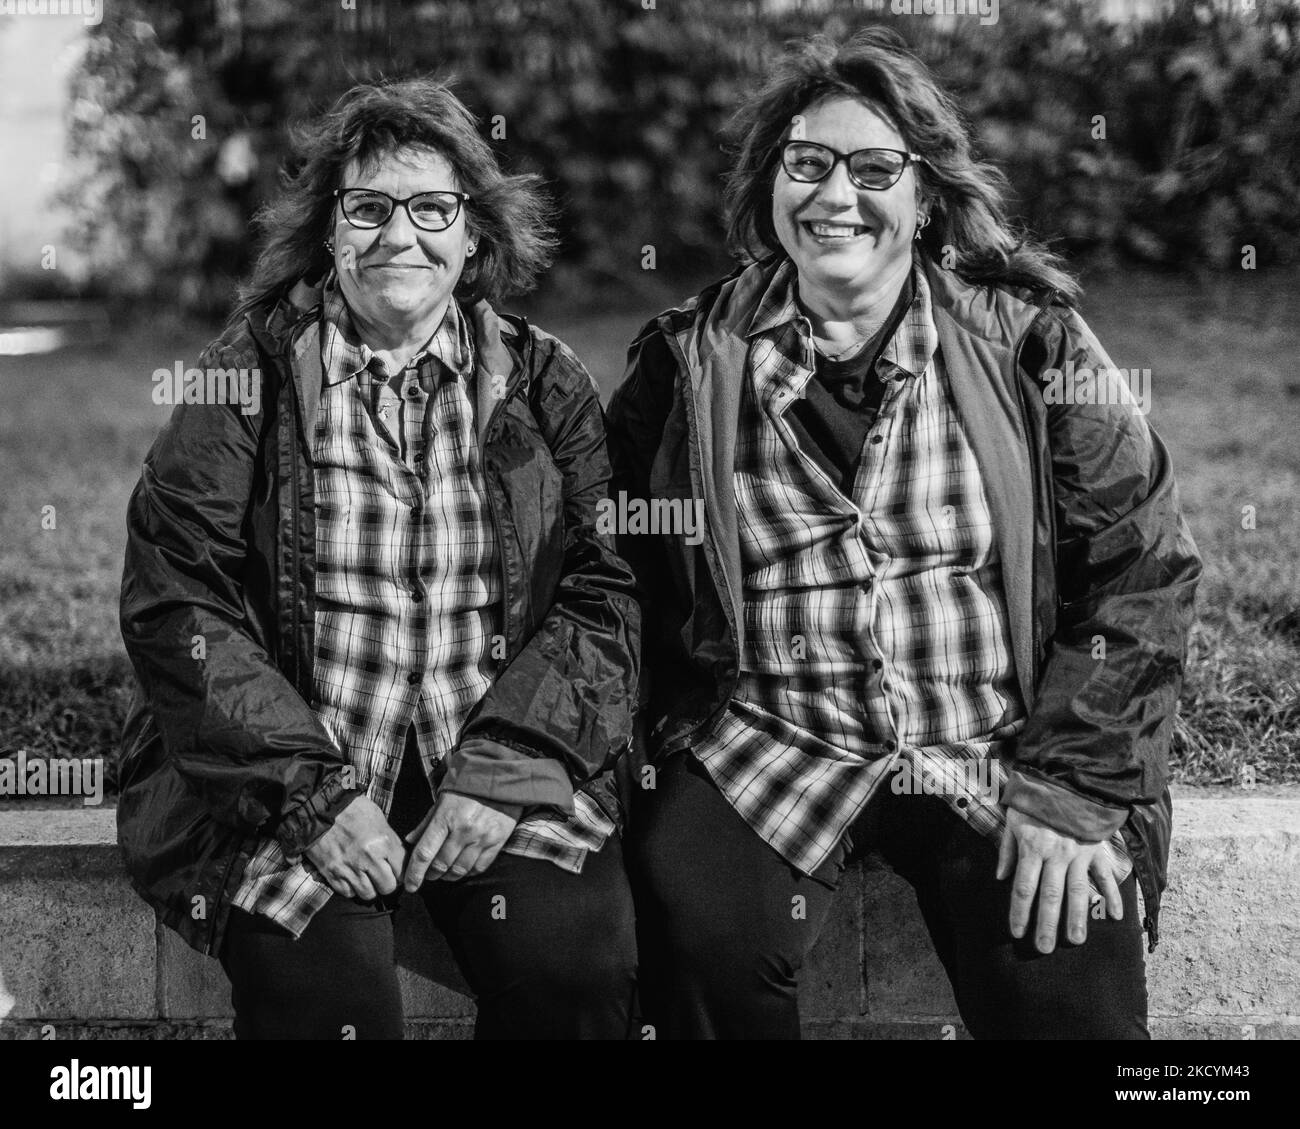 Immagine in bianco e nero dei gemelli spagnoli che si rilassano a Londra. Foto Stock